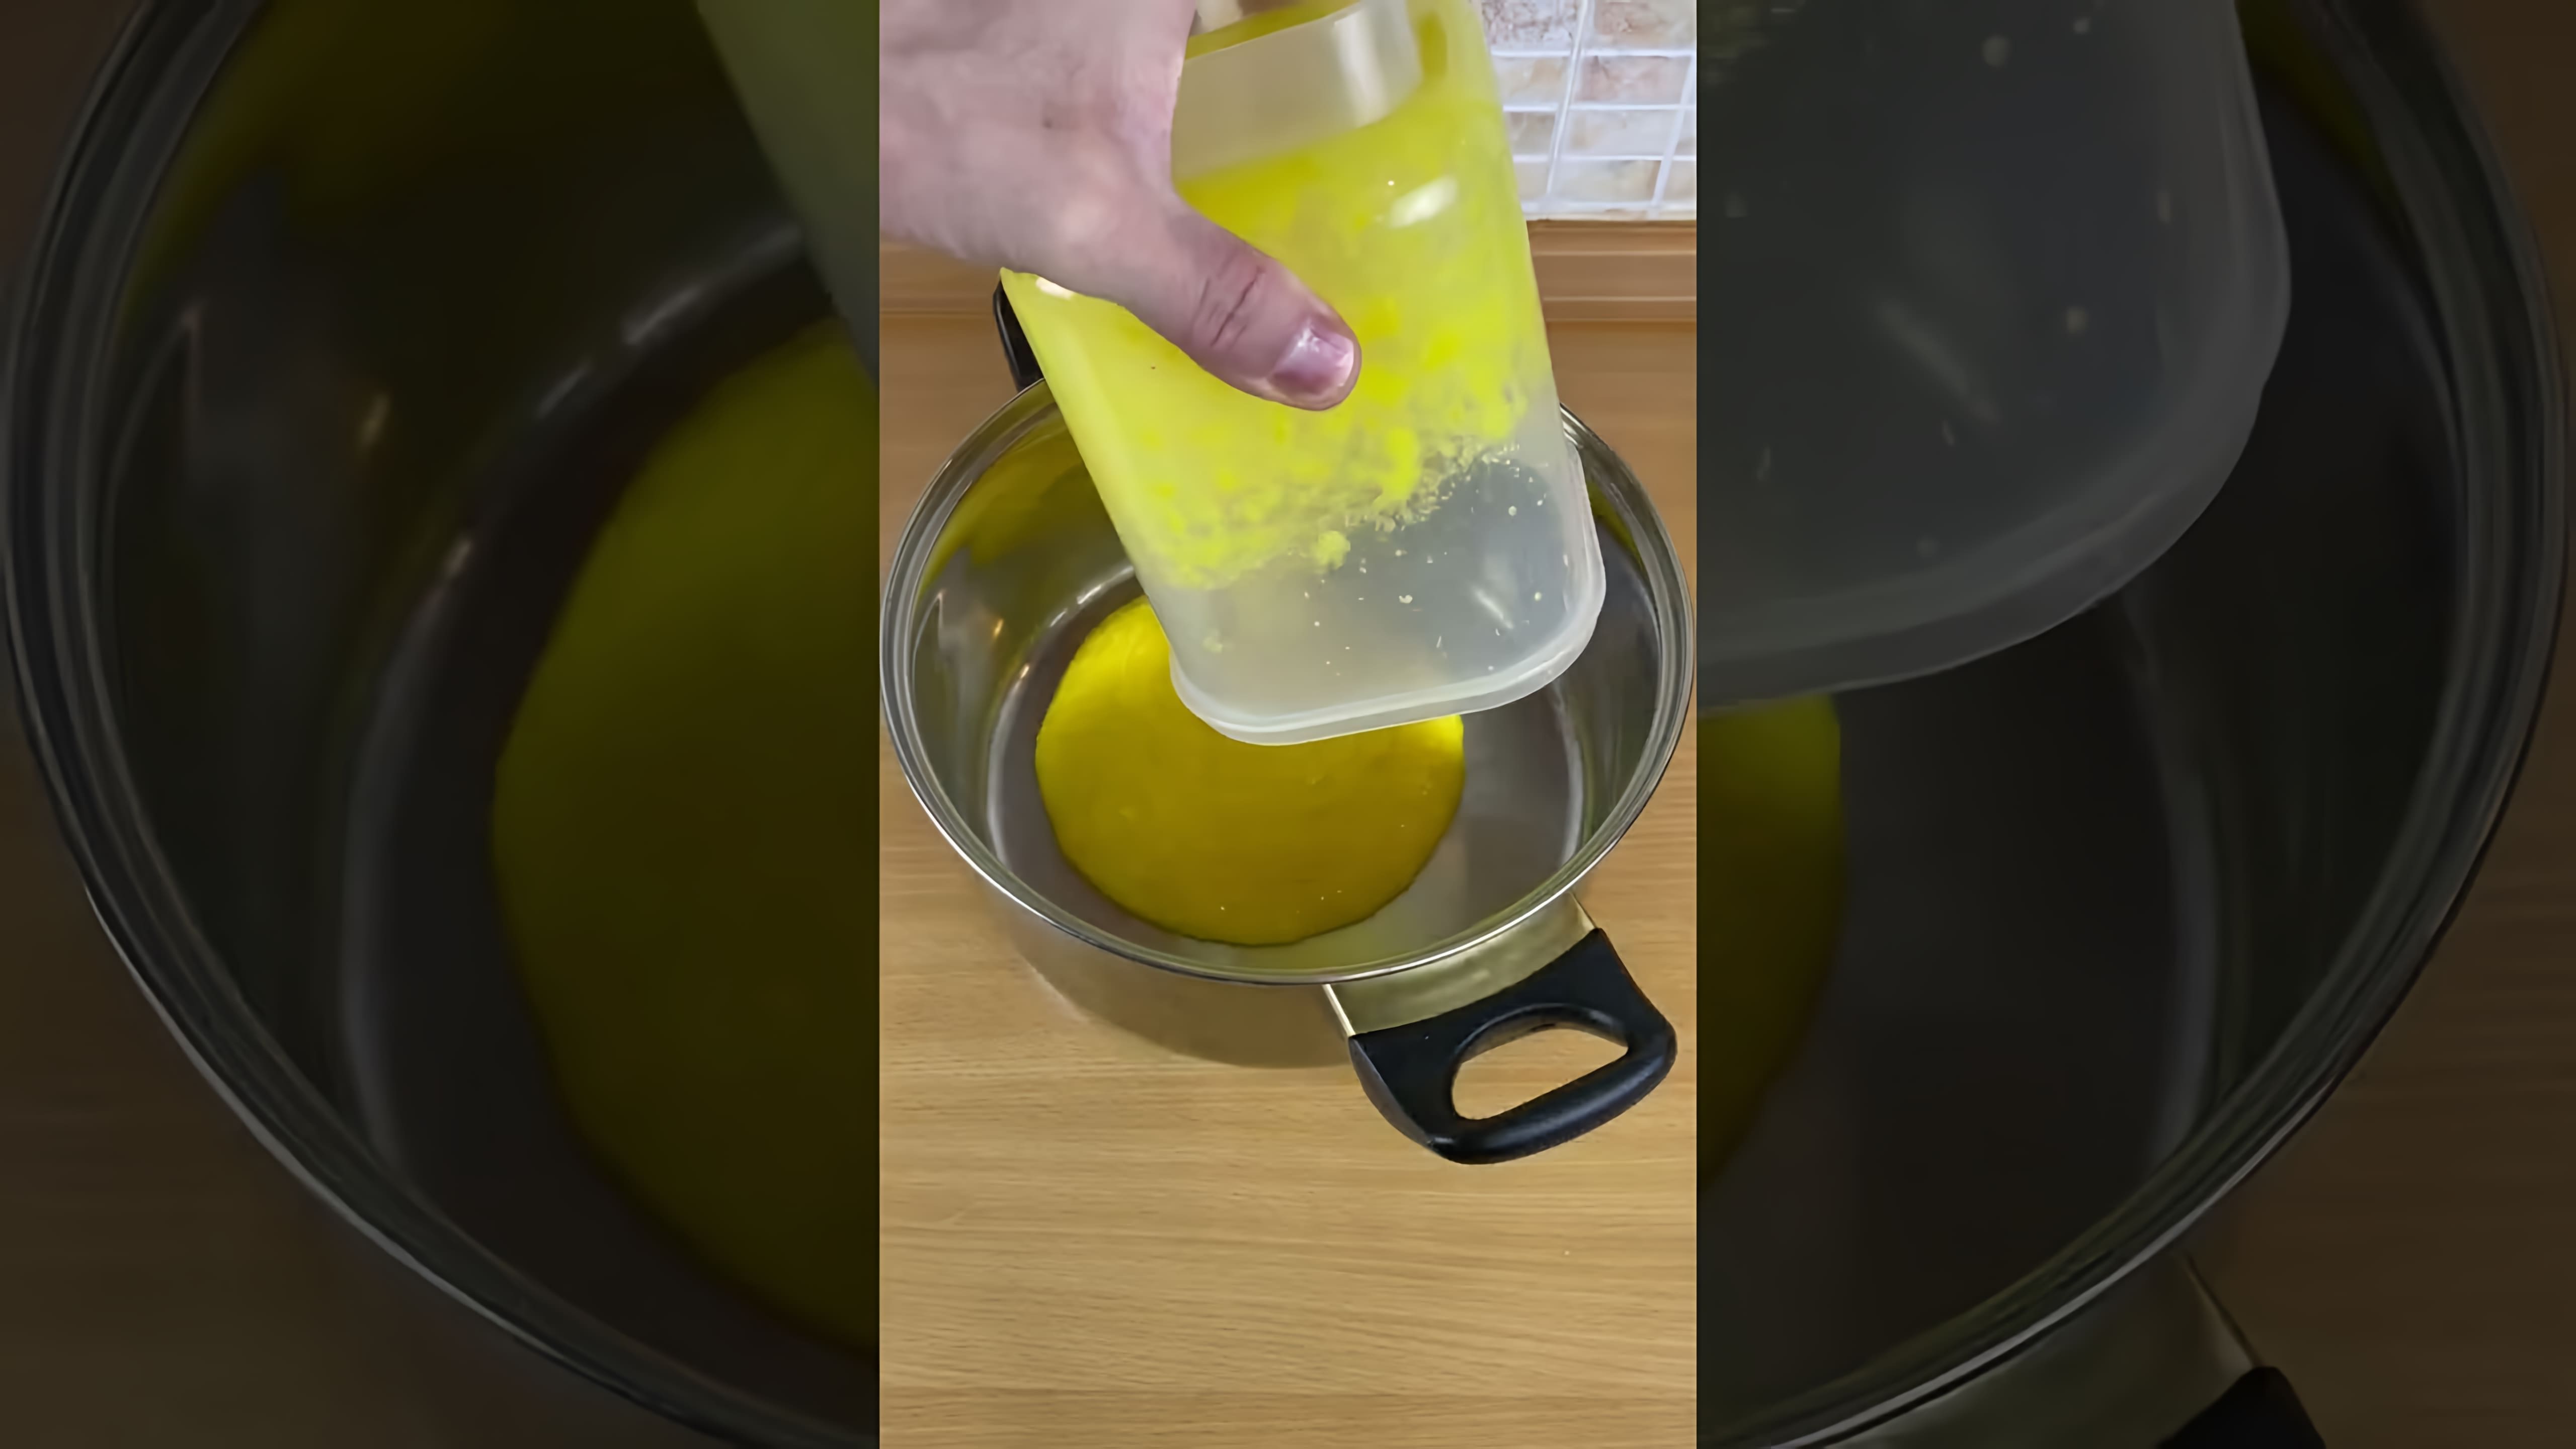 В этом видео показан процесс приготовления апельсинового сока в домашних условиях